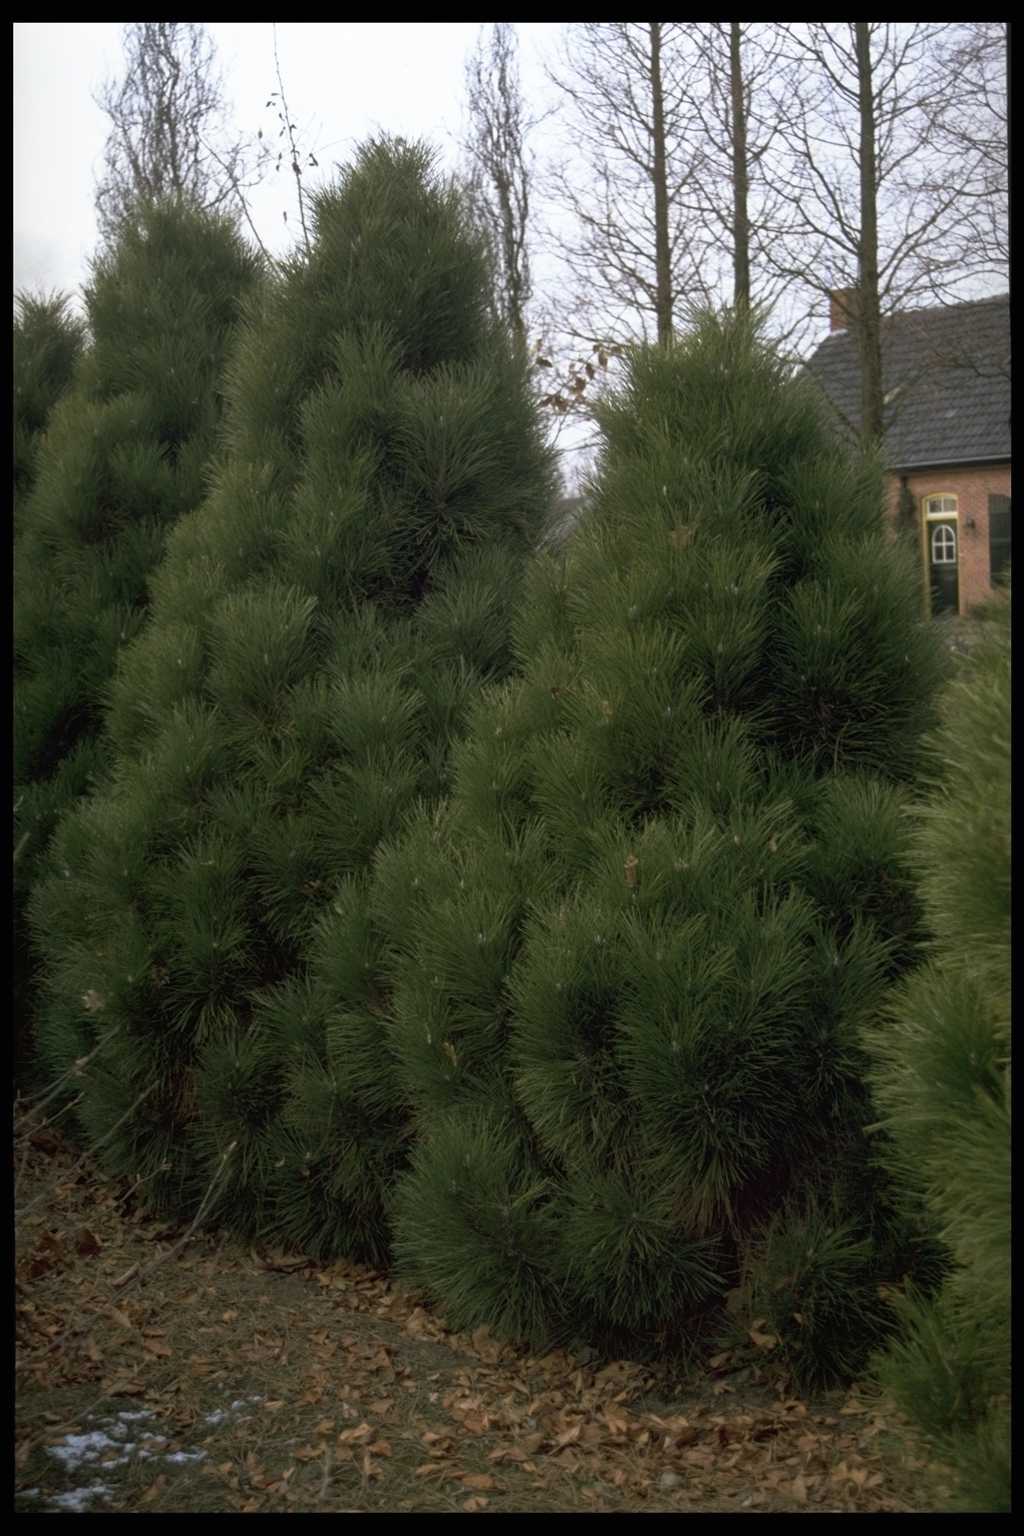 Pinus nigra ‘Pyramidalis’